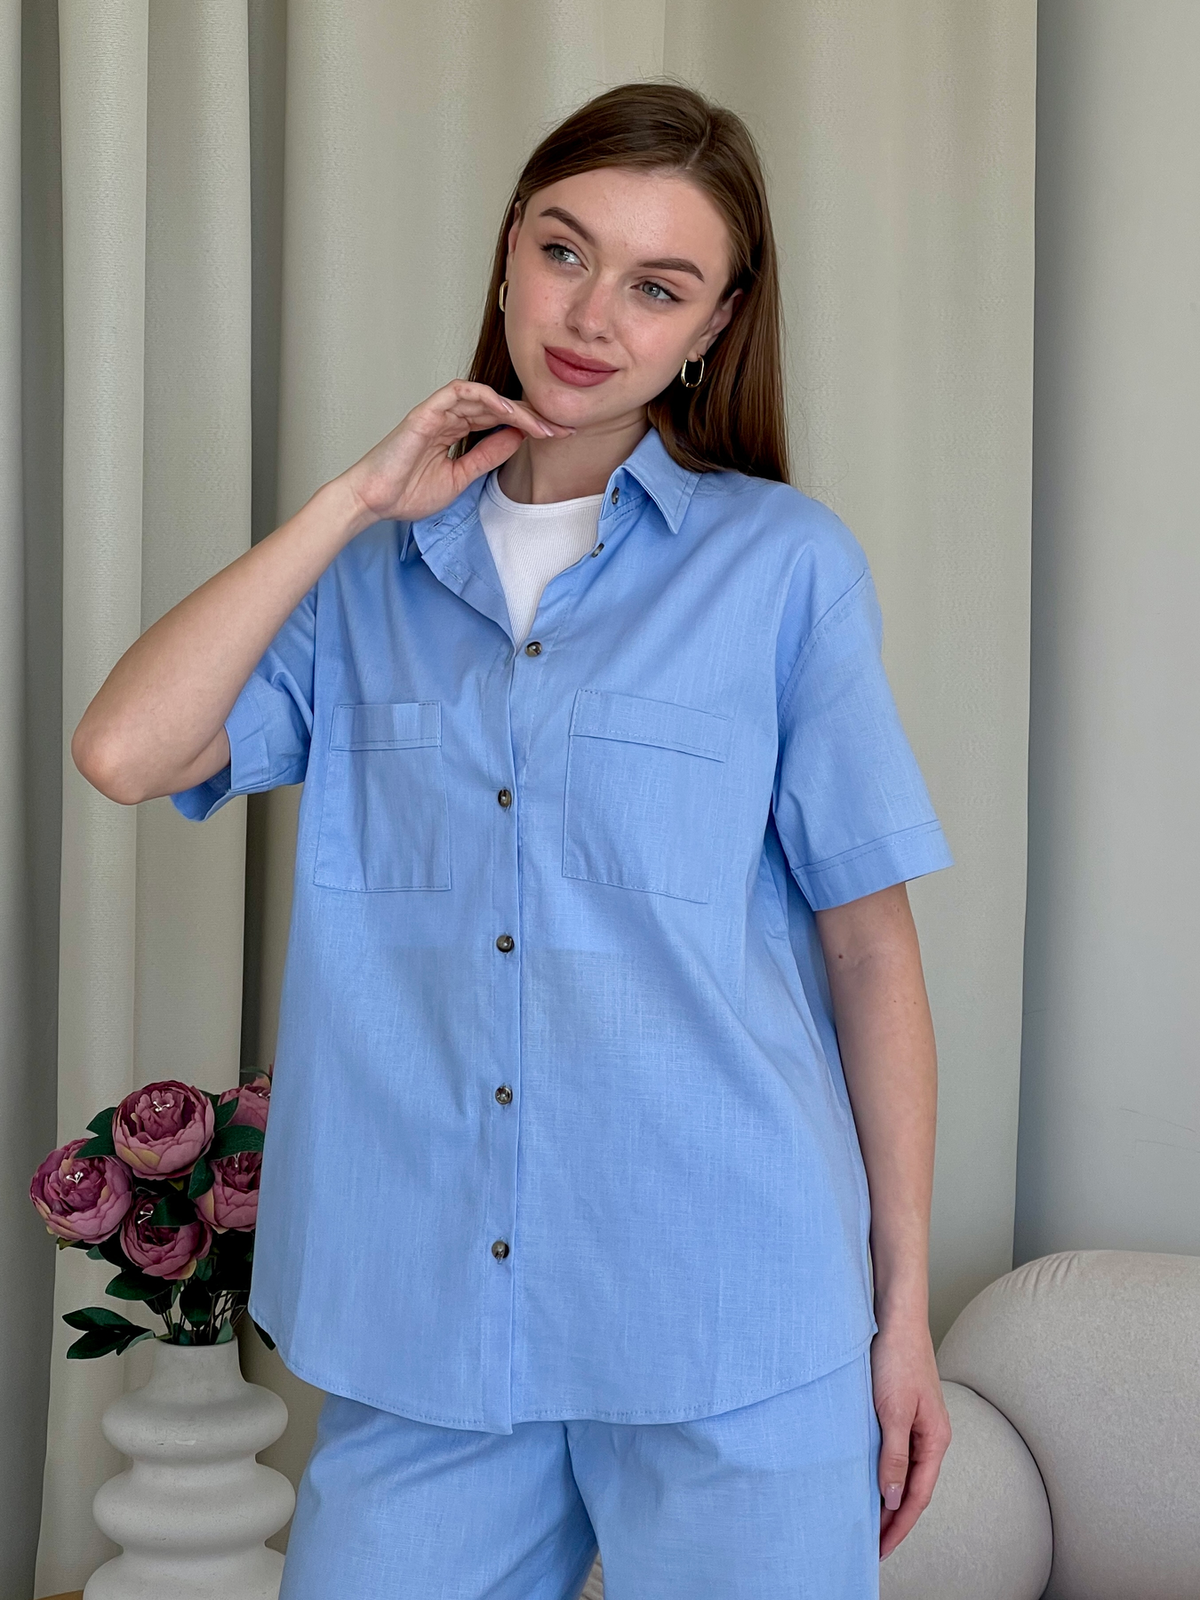 Купить Льняная рубашка с коротким рукавом голубая Merlini Нино 200001207 размер 42-44 (S-M) в интернет-магазине